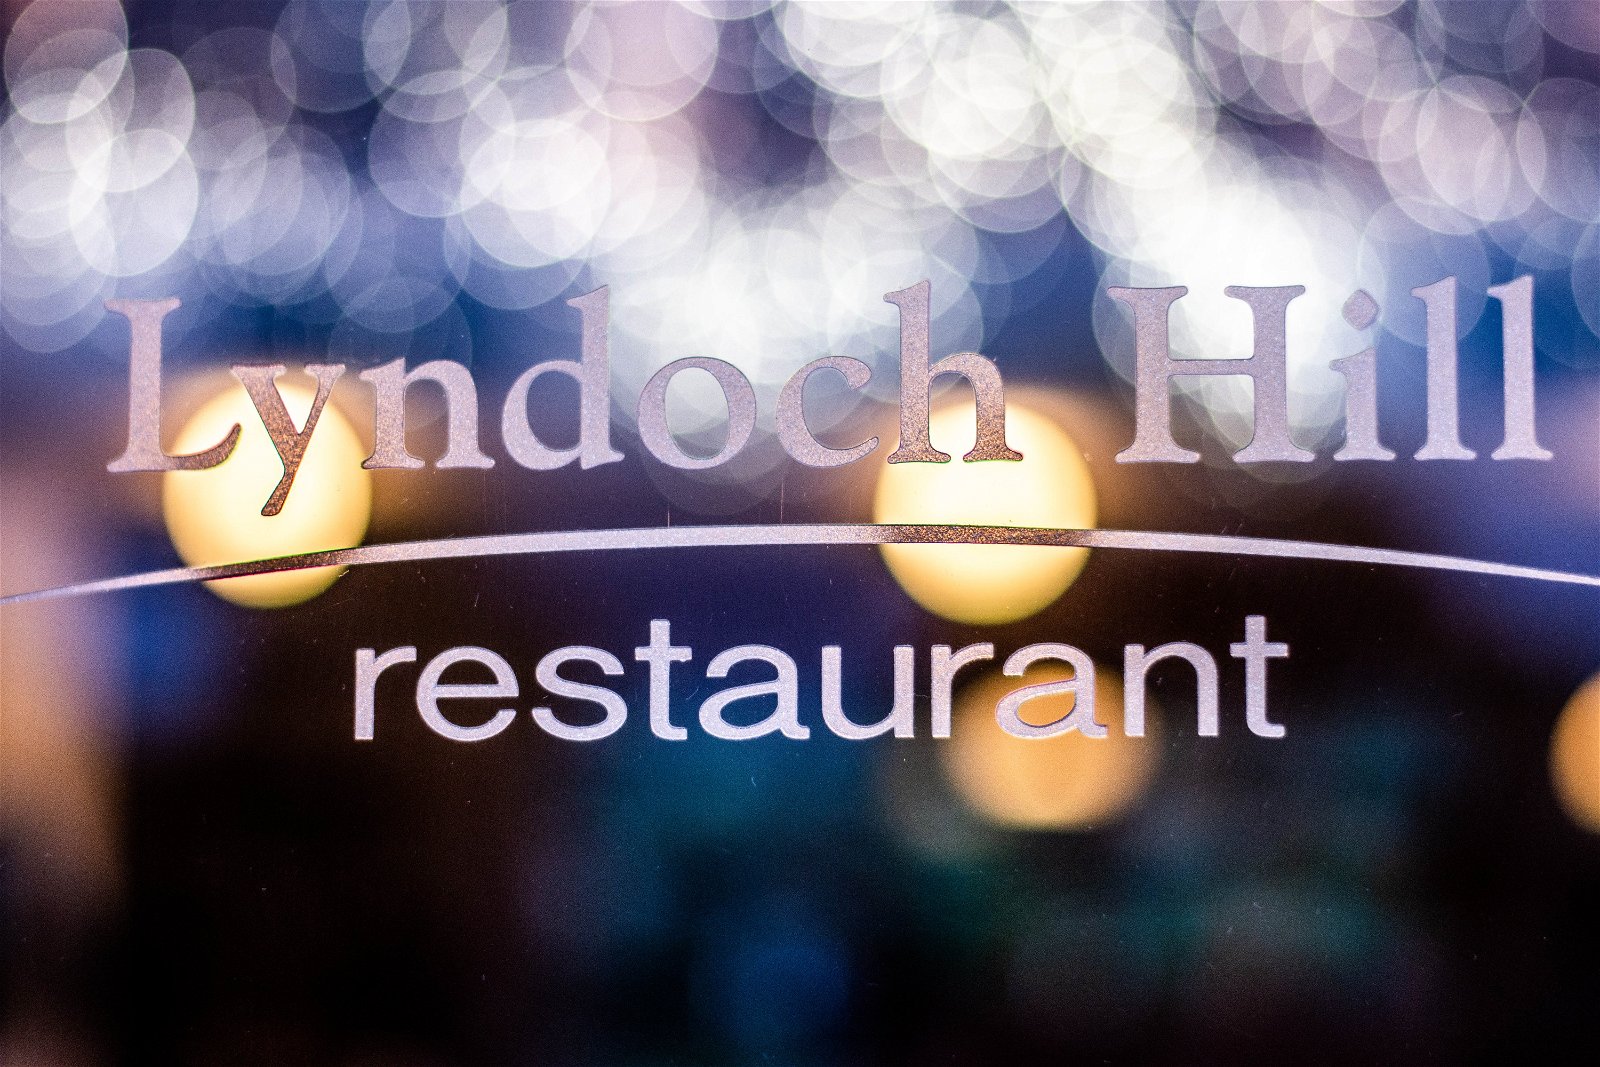 Lyndoch Hill Restaurant - thumb 1